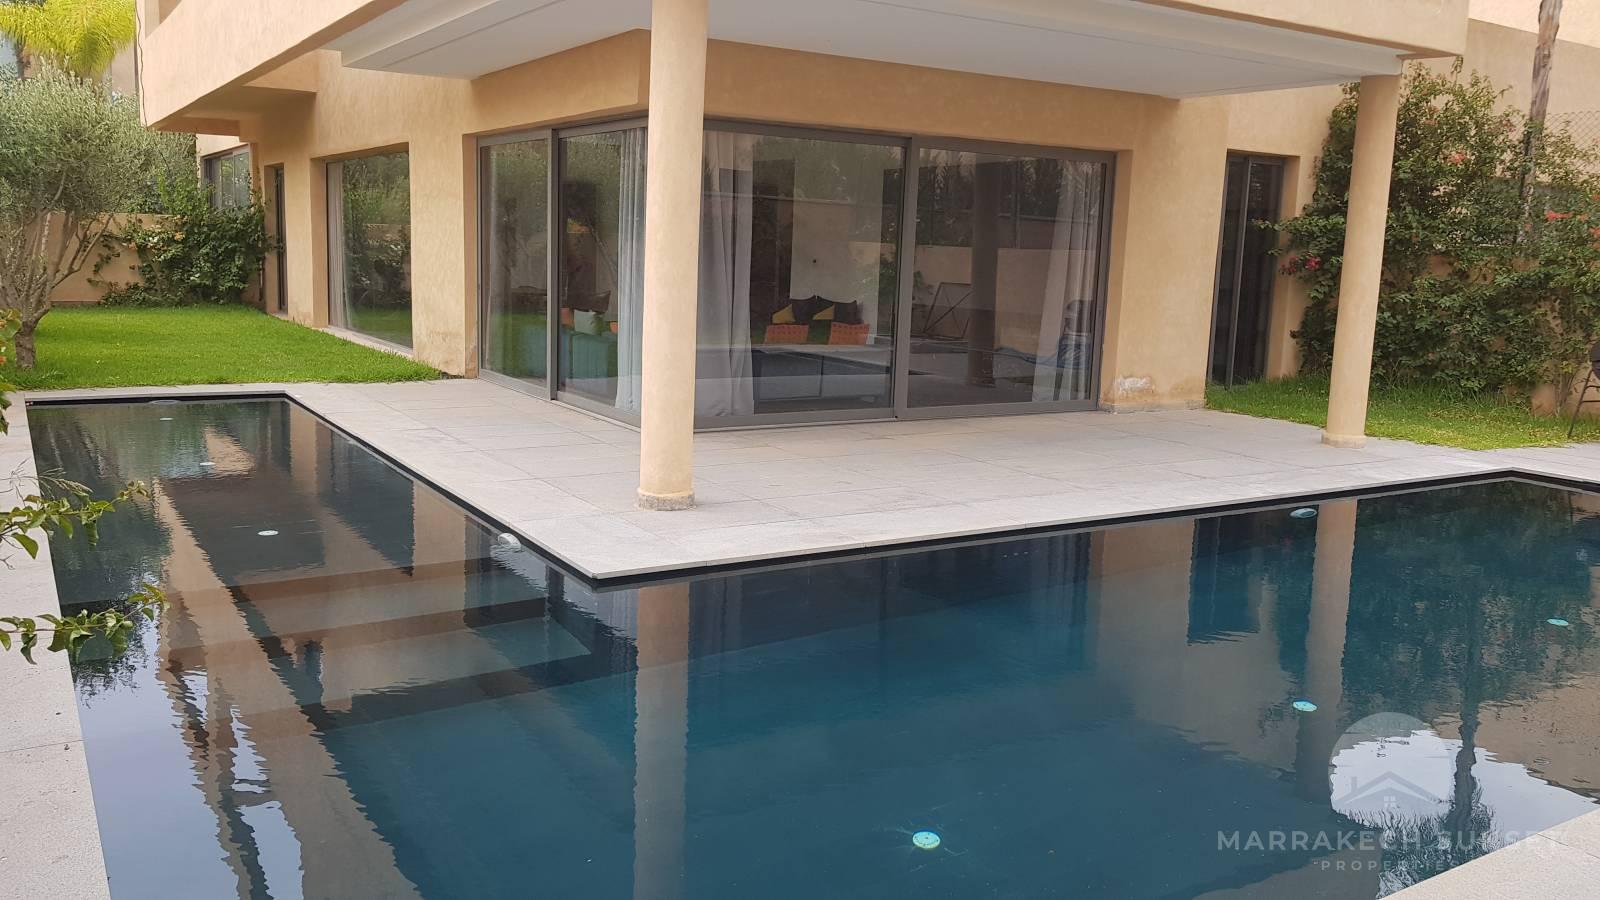 Villa de luxe a vendre a Marrakech de 4 chambres dans un domaine privé